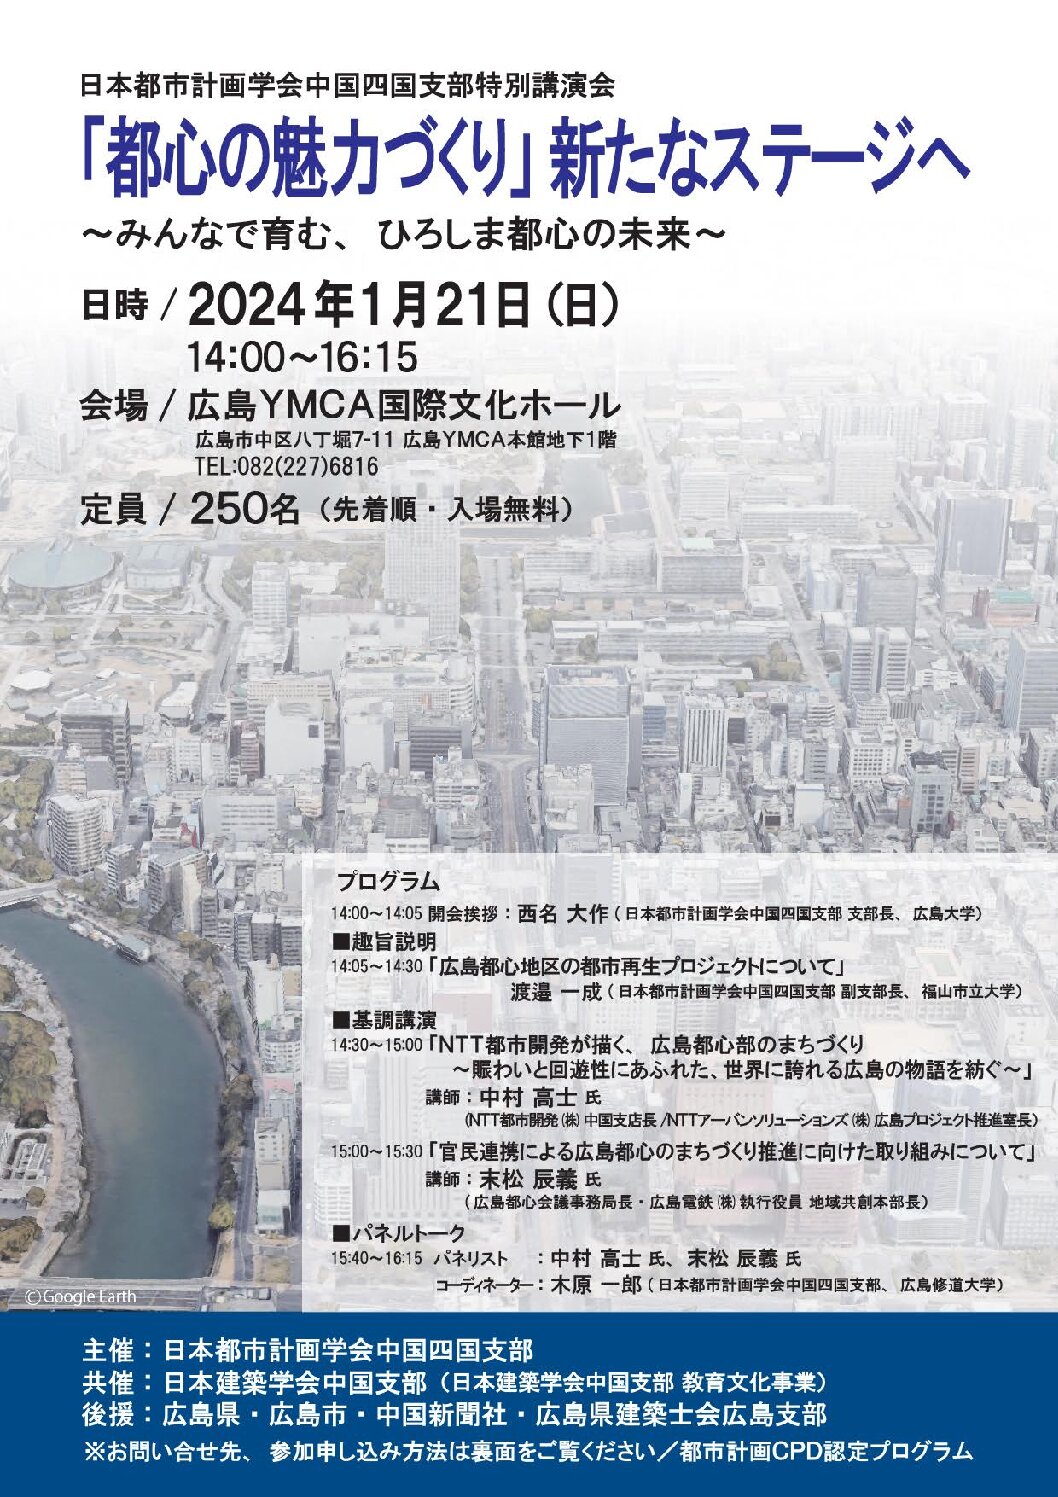 日本都市計画学会中国四国支部特別講演会「「都心の魅力づくり」新たなステージへ」～みんなで育む、ひろしま都心の未来～